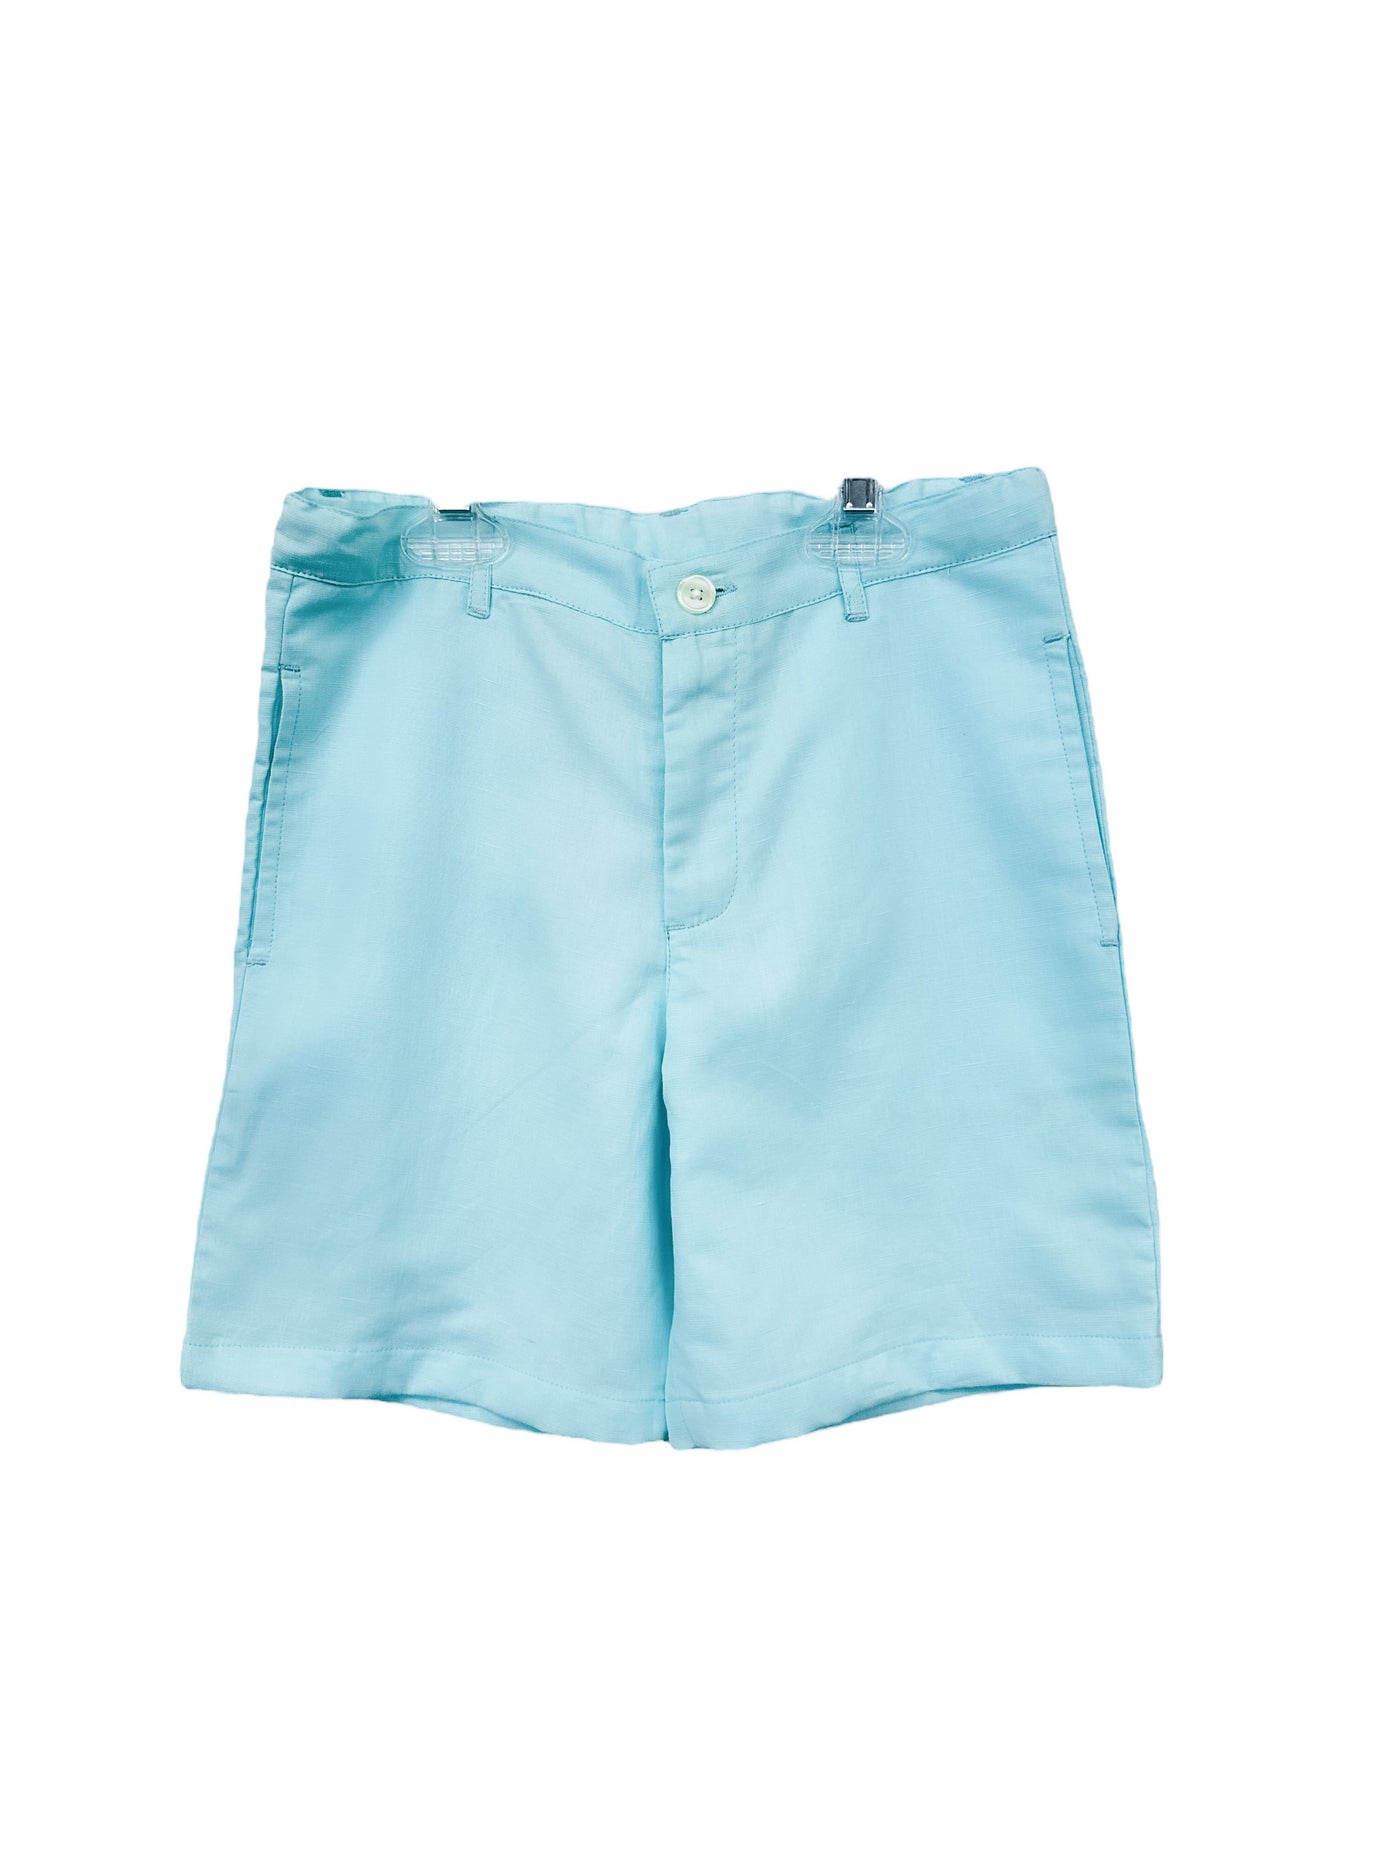 Boys Aqua Blue Linen Shorts